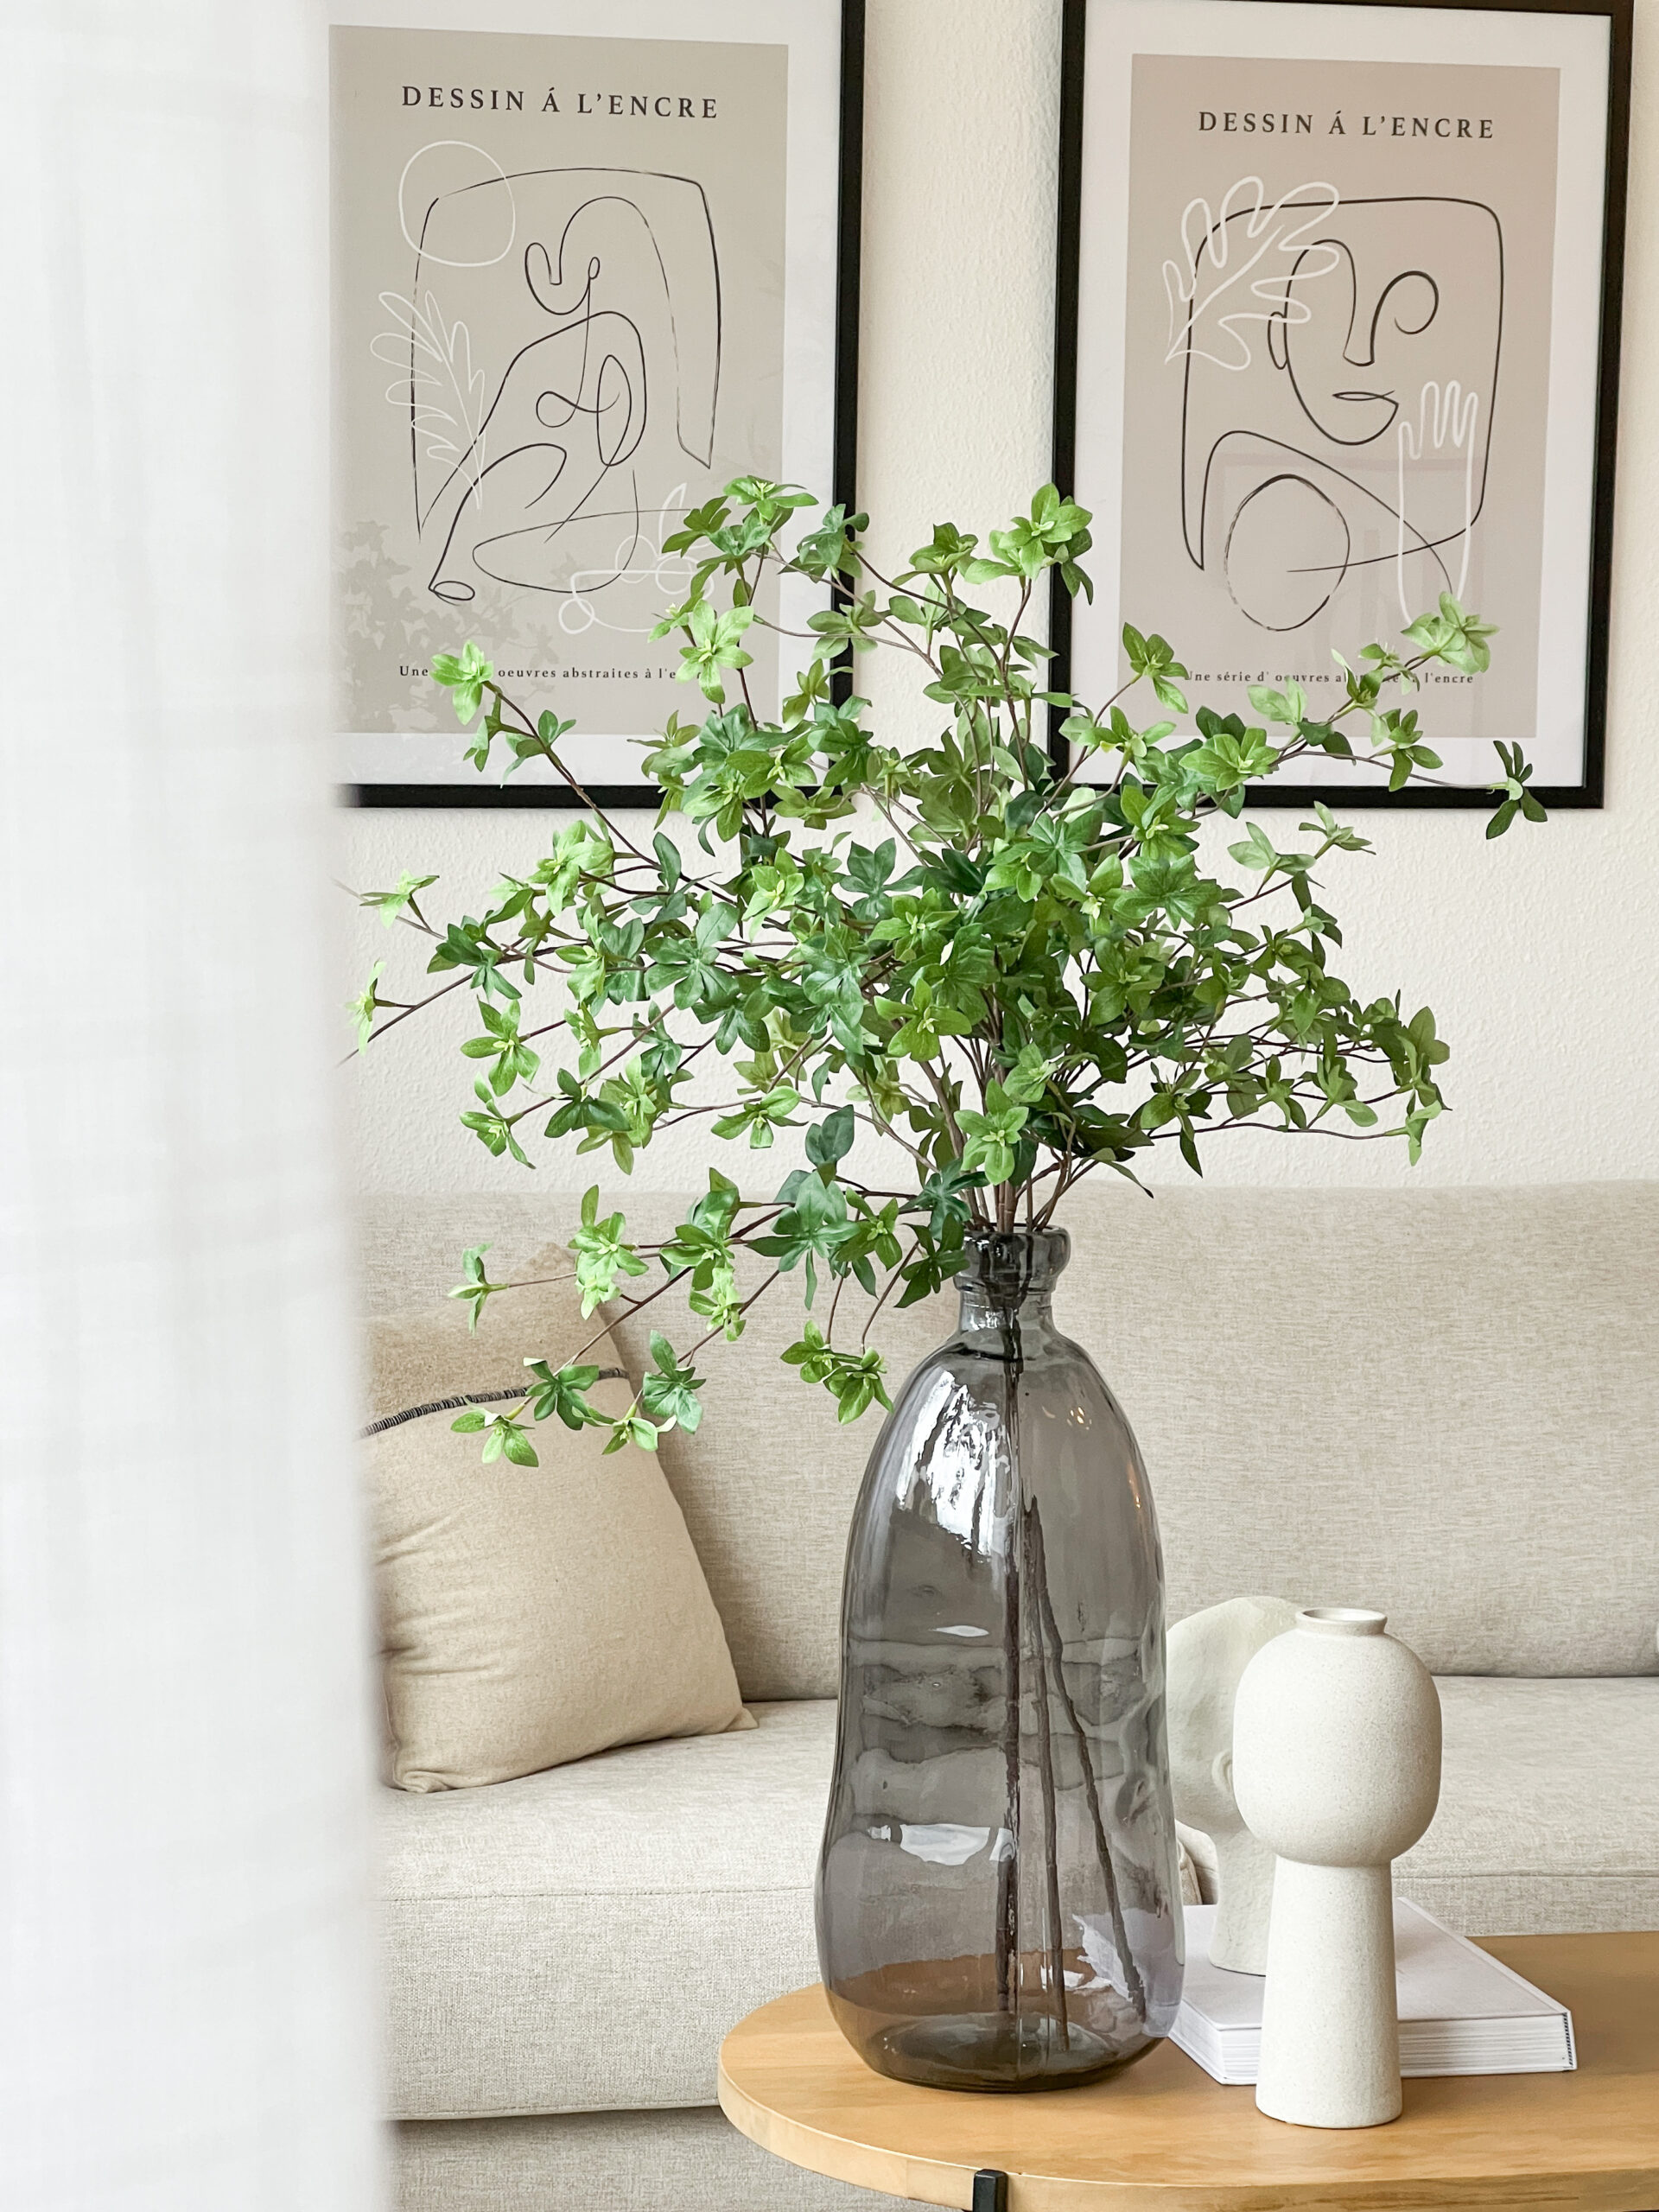 Auf dem Bild ist eine Vase mit Zweigen zu sehen, die auf einem Couchtisch steht. Im Hintergrund sieht man das SOfa und die Wandbilder